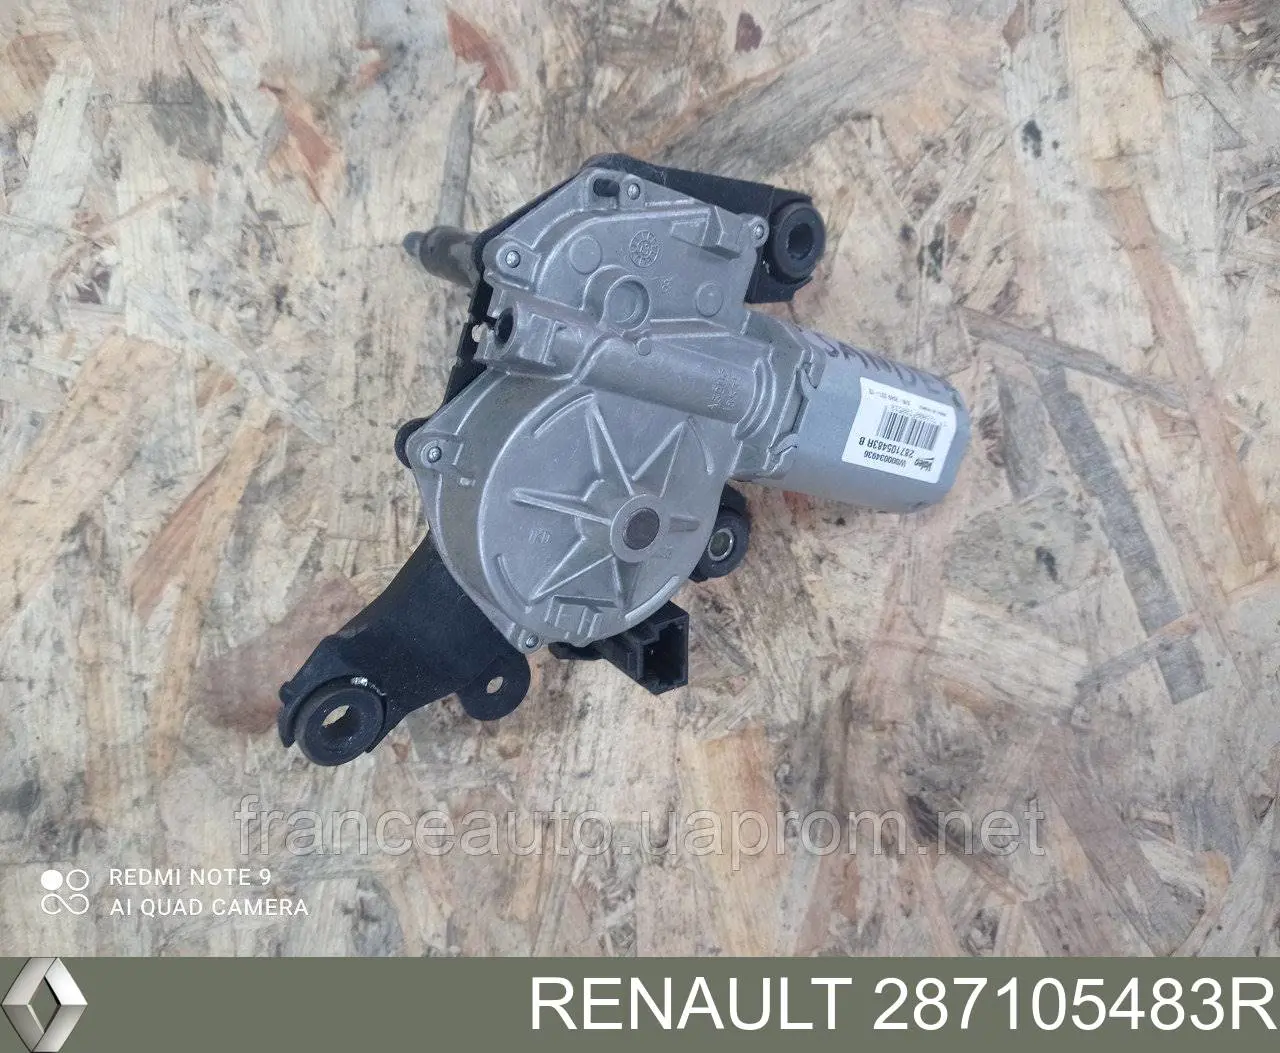 287105483R Renault (RVI) motor de limpador pára-brisas de vidro traseiro